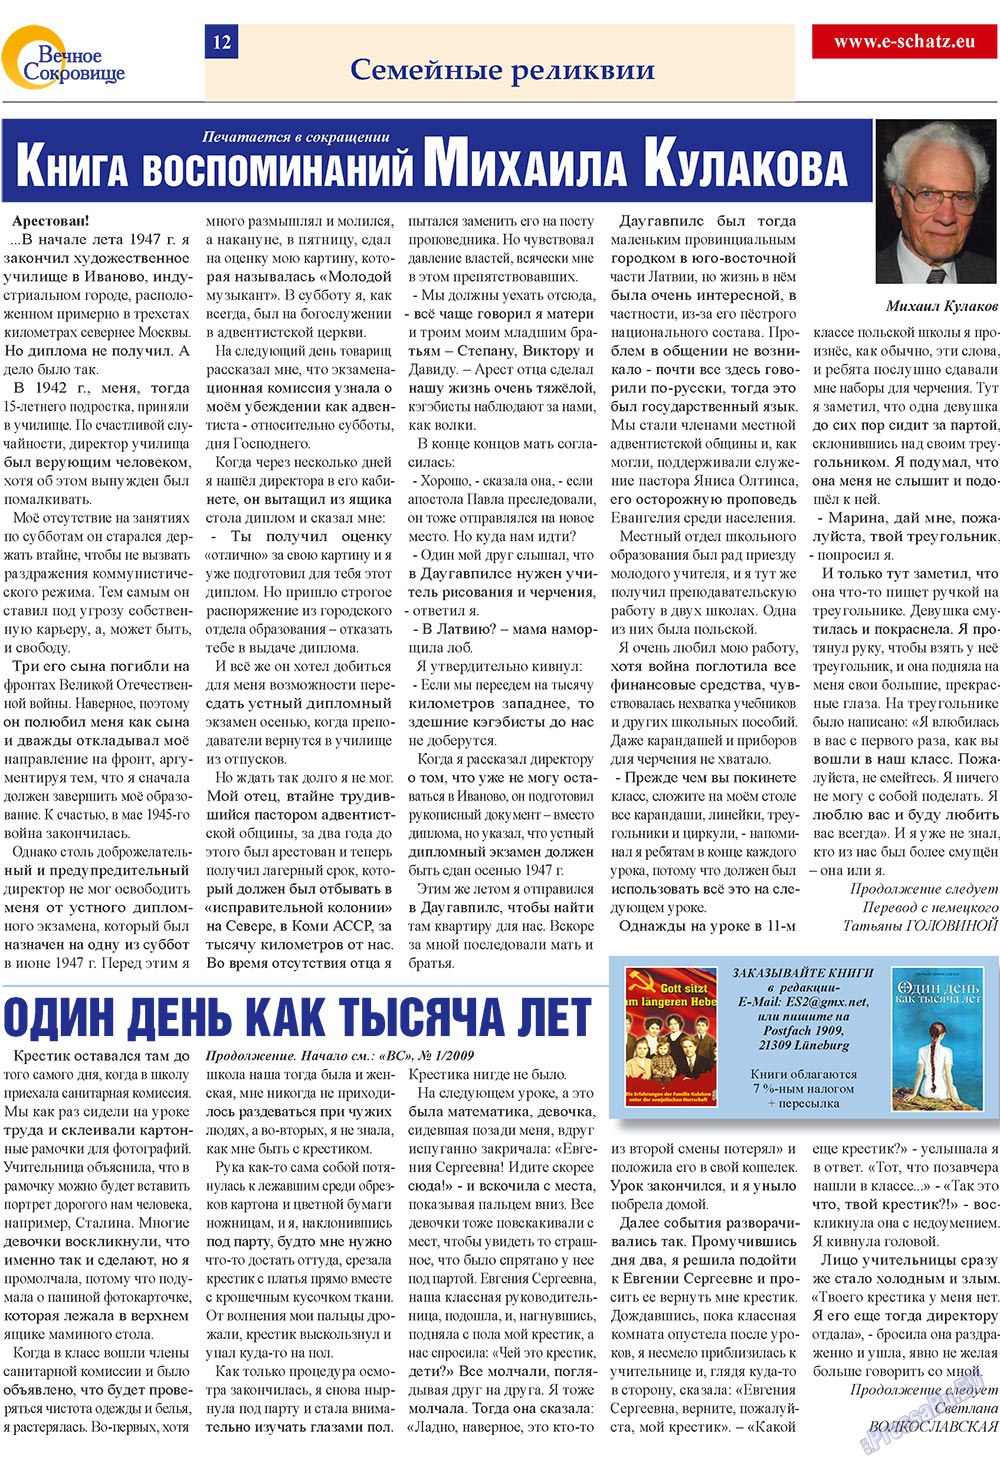 Вечное сокровище (газета). 2009 год, номер 2, стр. 12